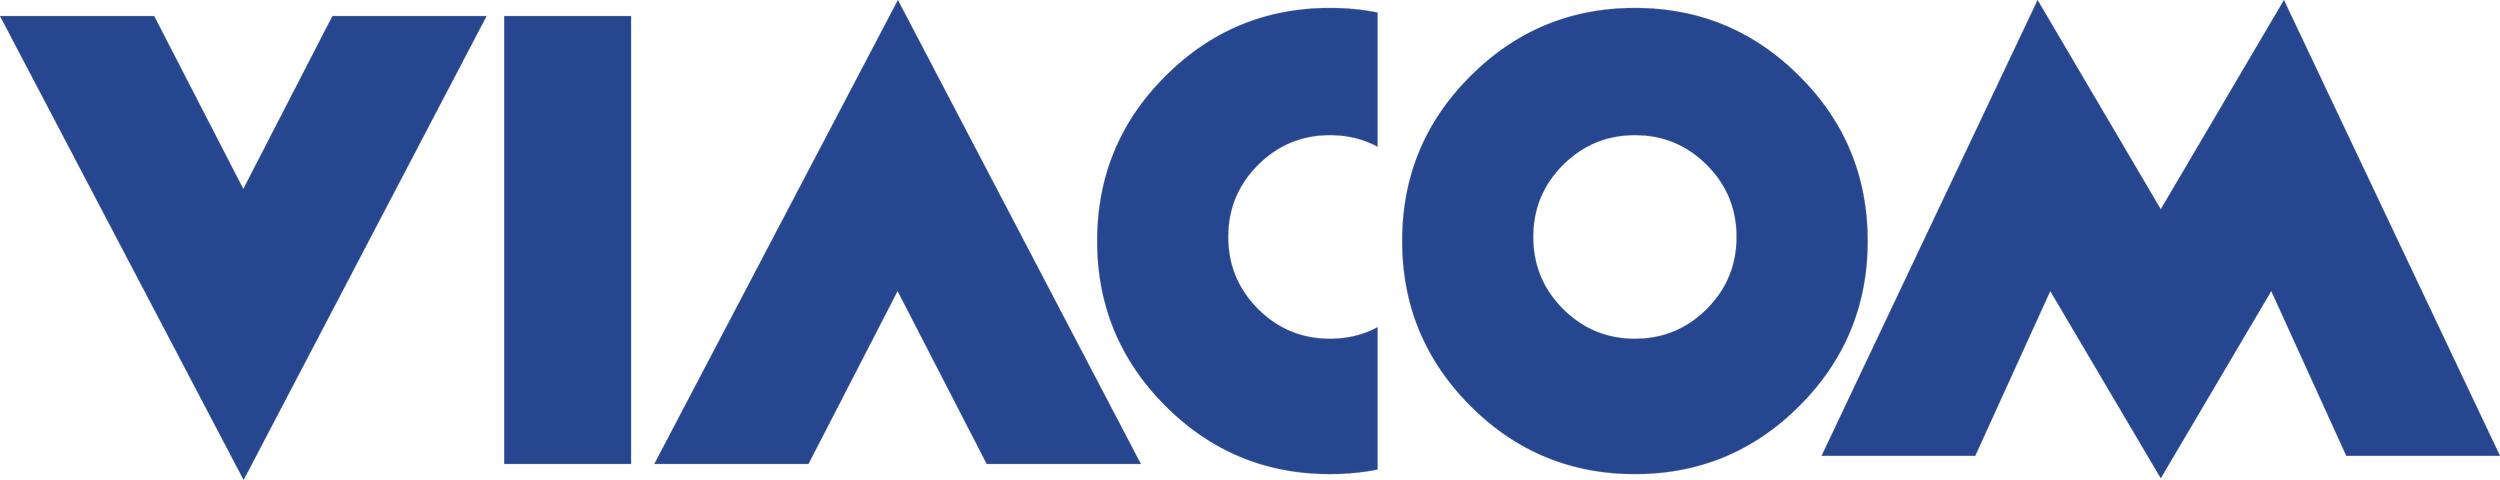 Viacom_Logo.png